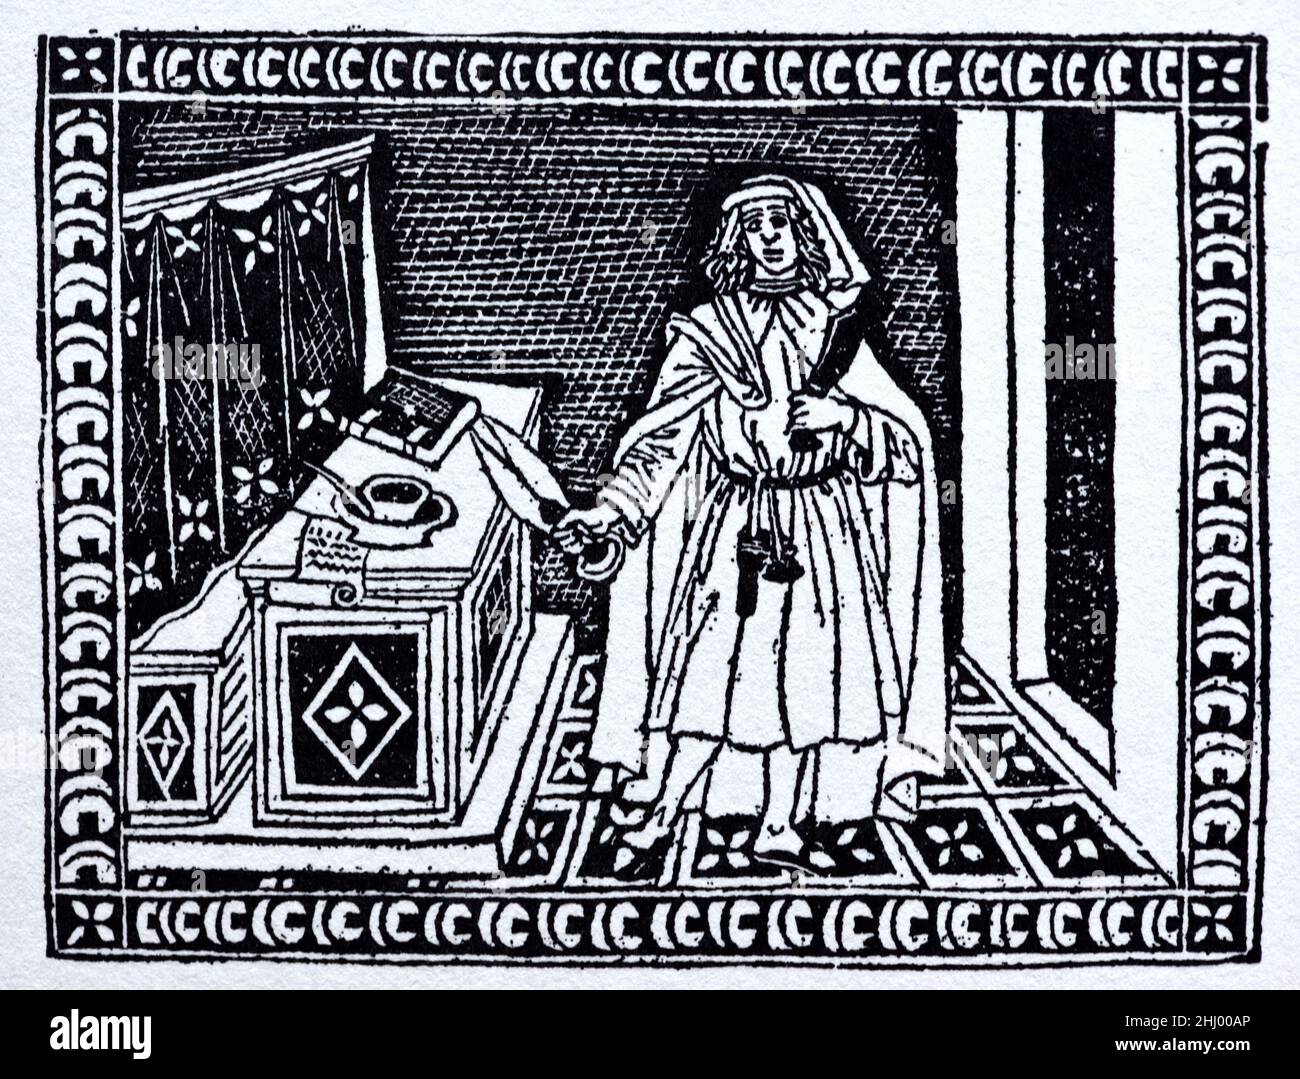 Laine Trader découpage de tissus dans Shop Florence Italie. c15th Woodcut Print, Engraving or Illustration. Banque D'Images